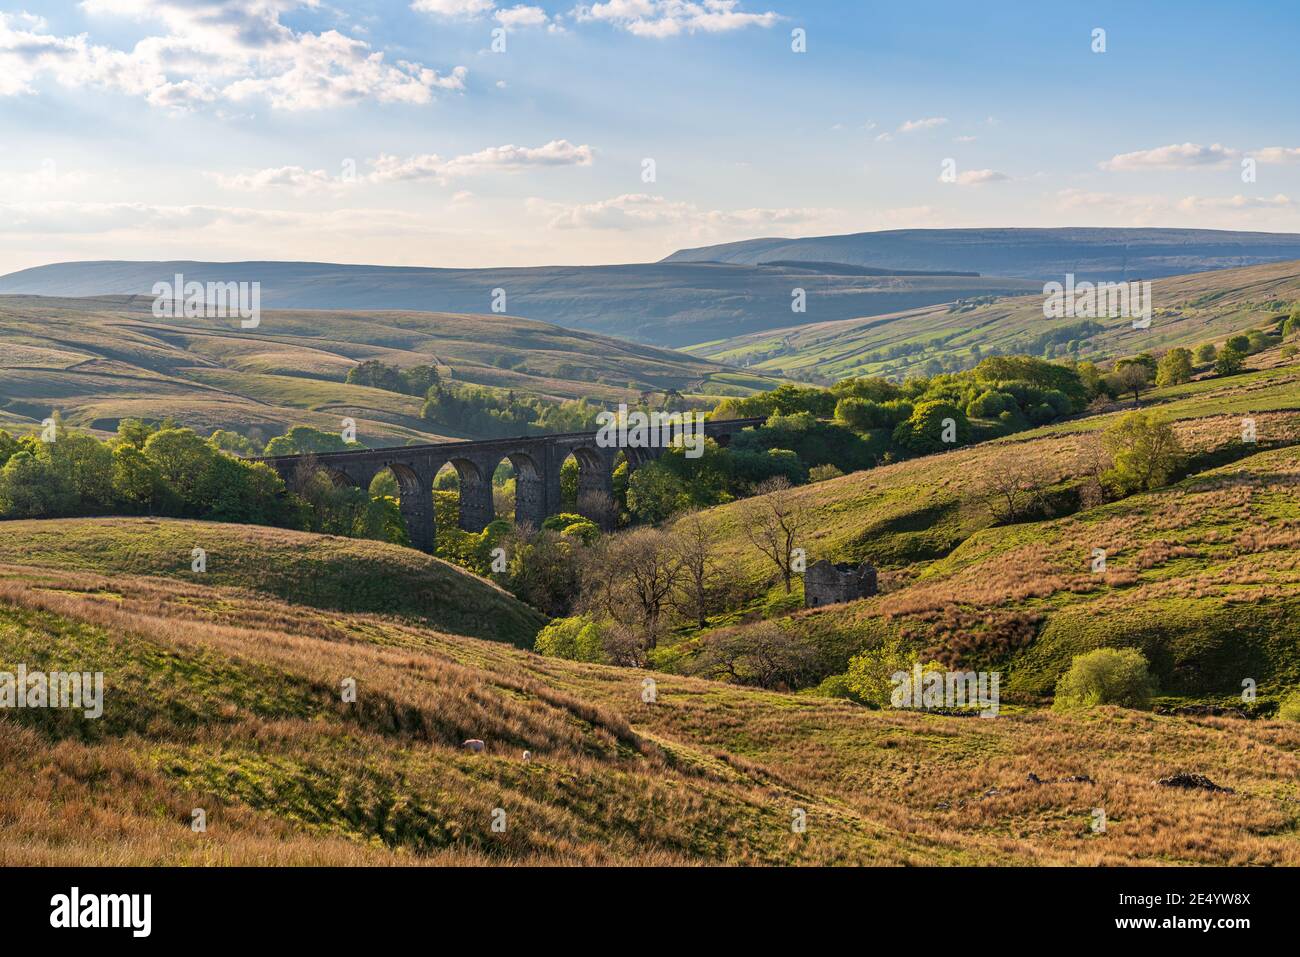 La abolladura viaducto de cabeza con la abolladura Dale paisaje en el fondo, cerca Cowgill, Cumbria, Inglaterra, Reino Unido. Foto de stock